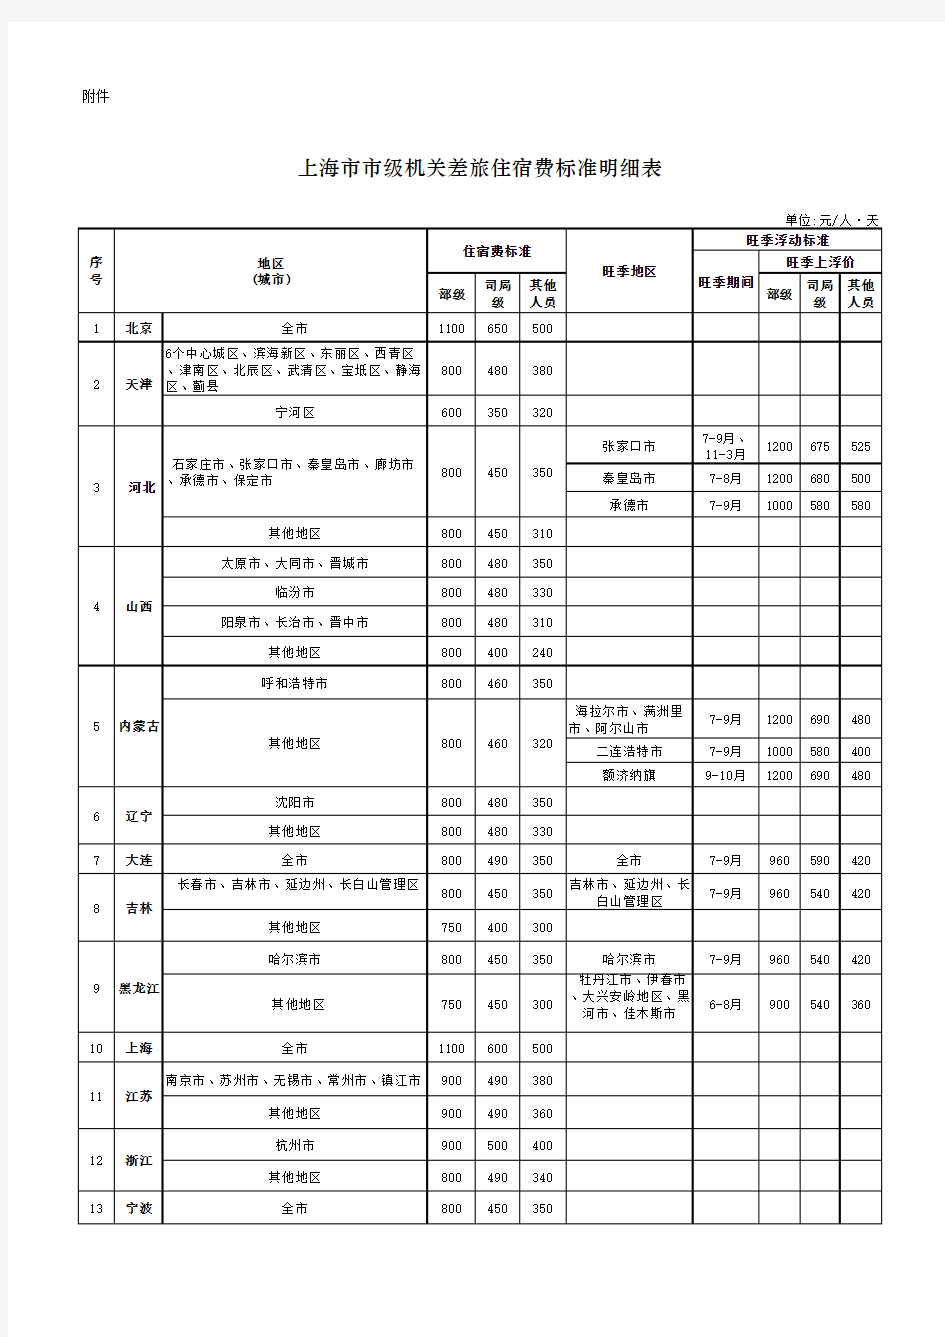 上海市市级机关差旅住宿费标准明细表